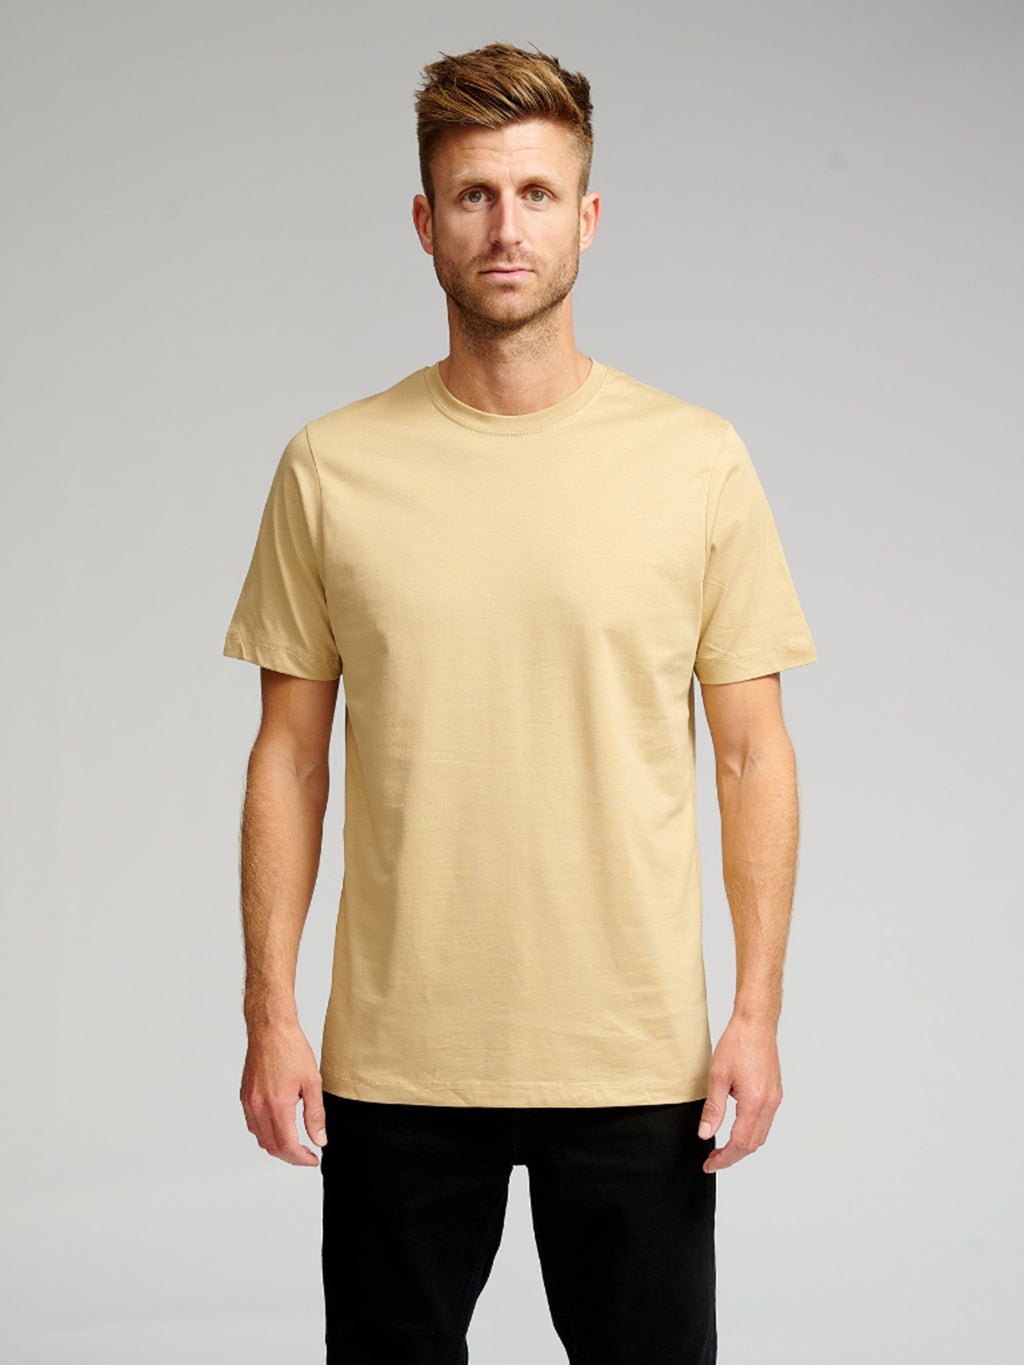 T-shirts de base organiques - Forme de package (3 pc.)